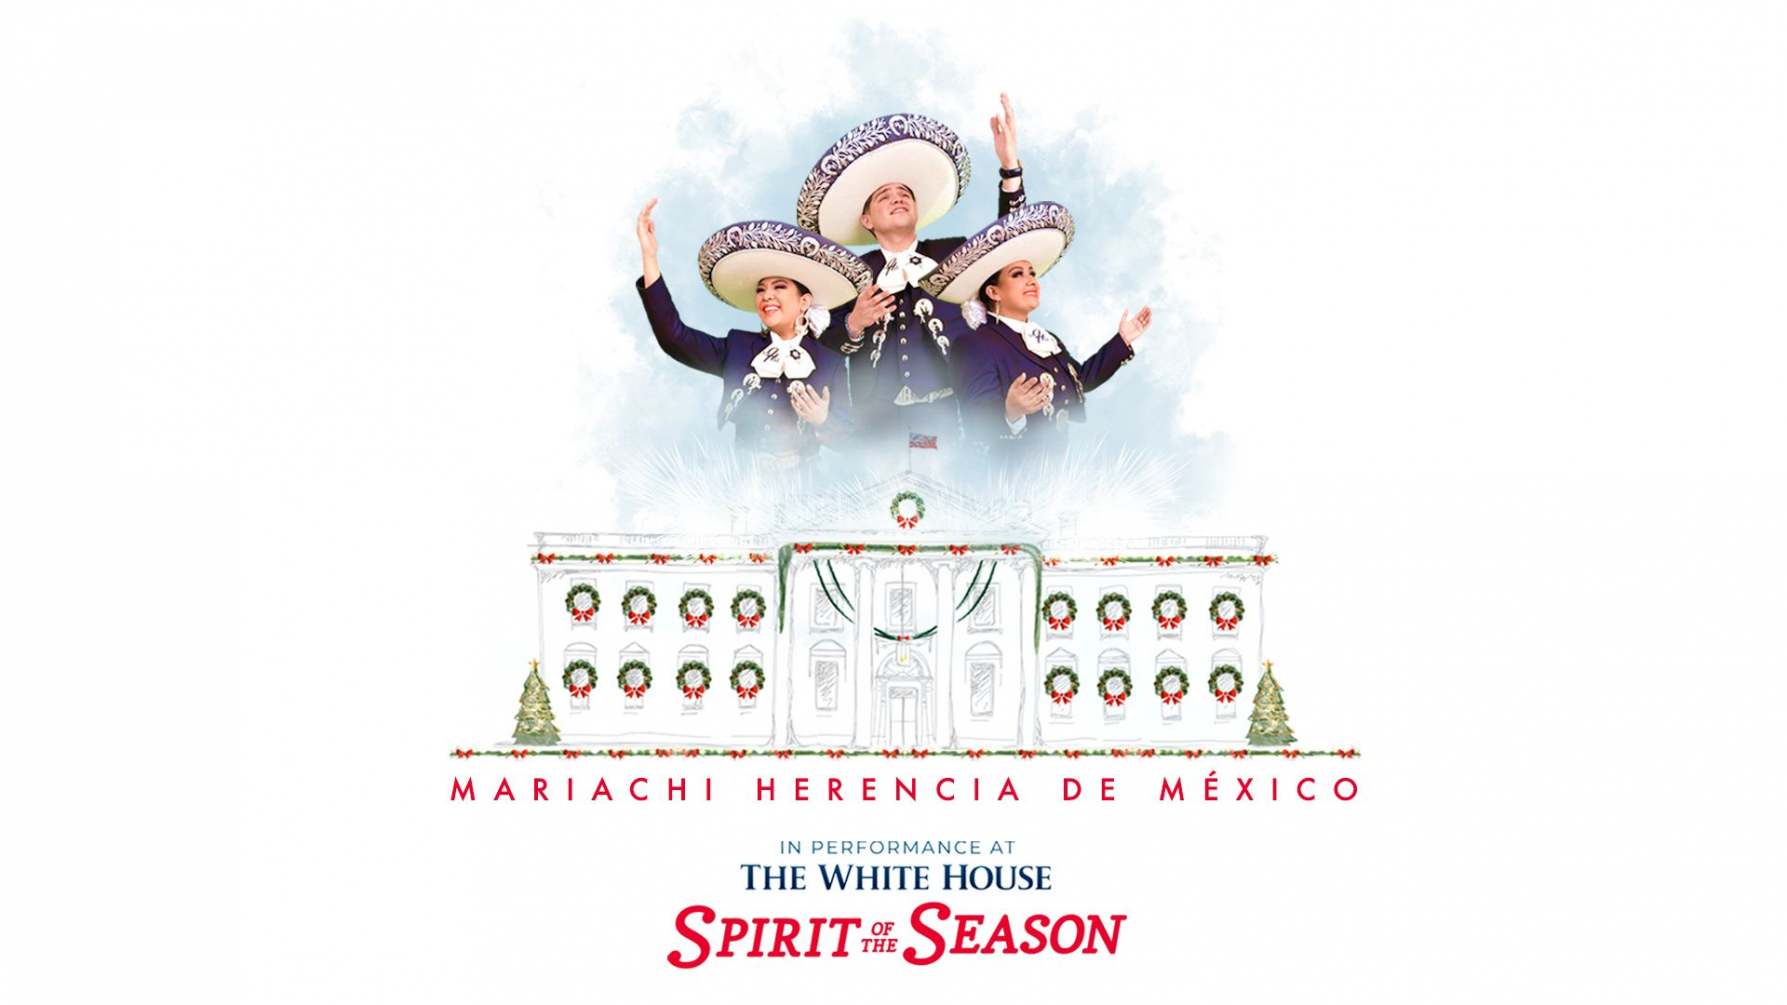 Mariachi Herencia De Mexico